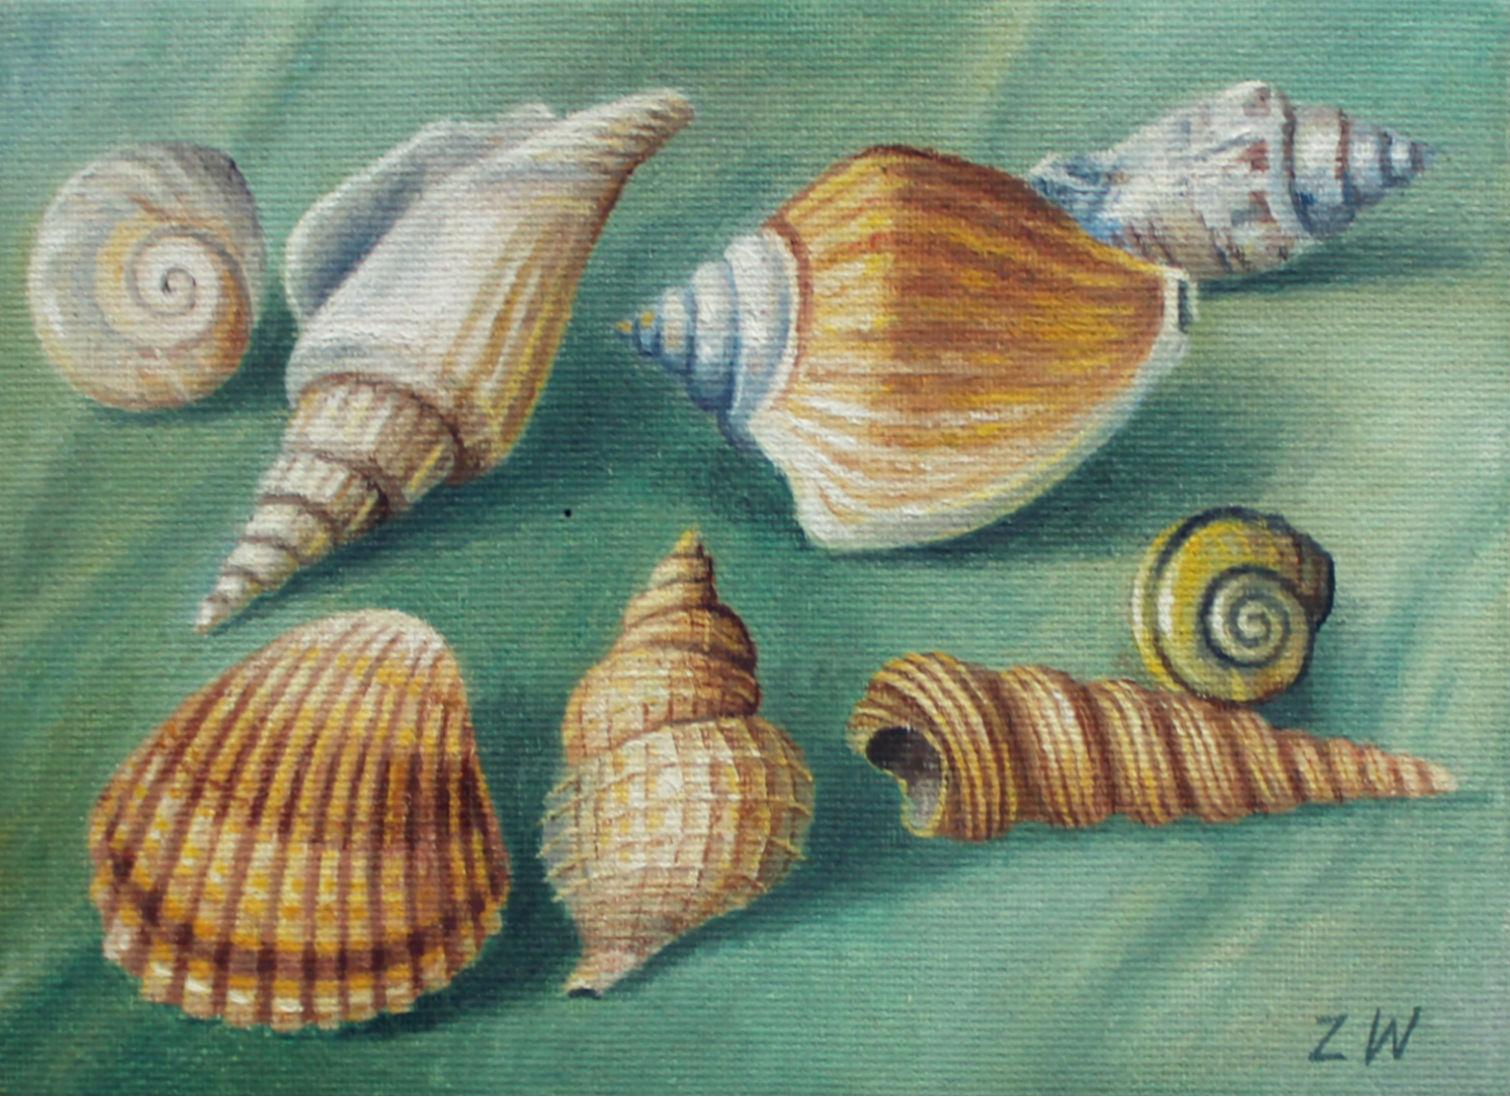 Zbigniew Wozniak Figurative Painting – Shell Shells - Zeitgenössisches figuratives Ölgemälde, Stillleben, gedämpfte Farben, Realismus